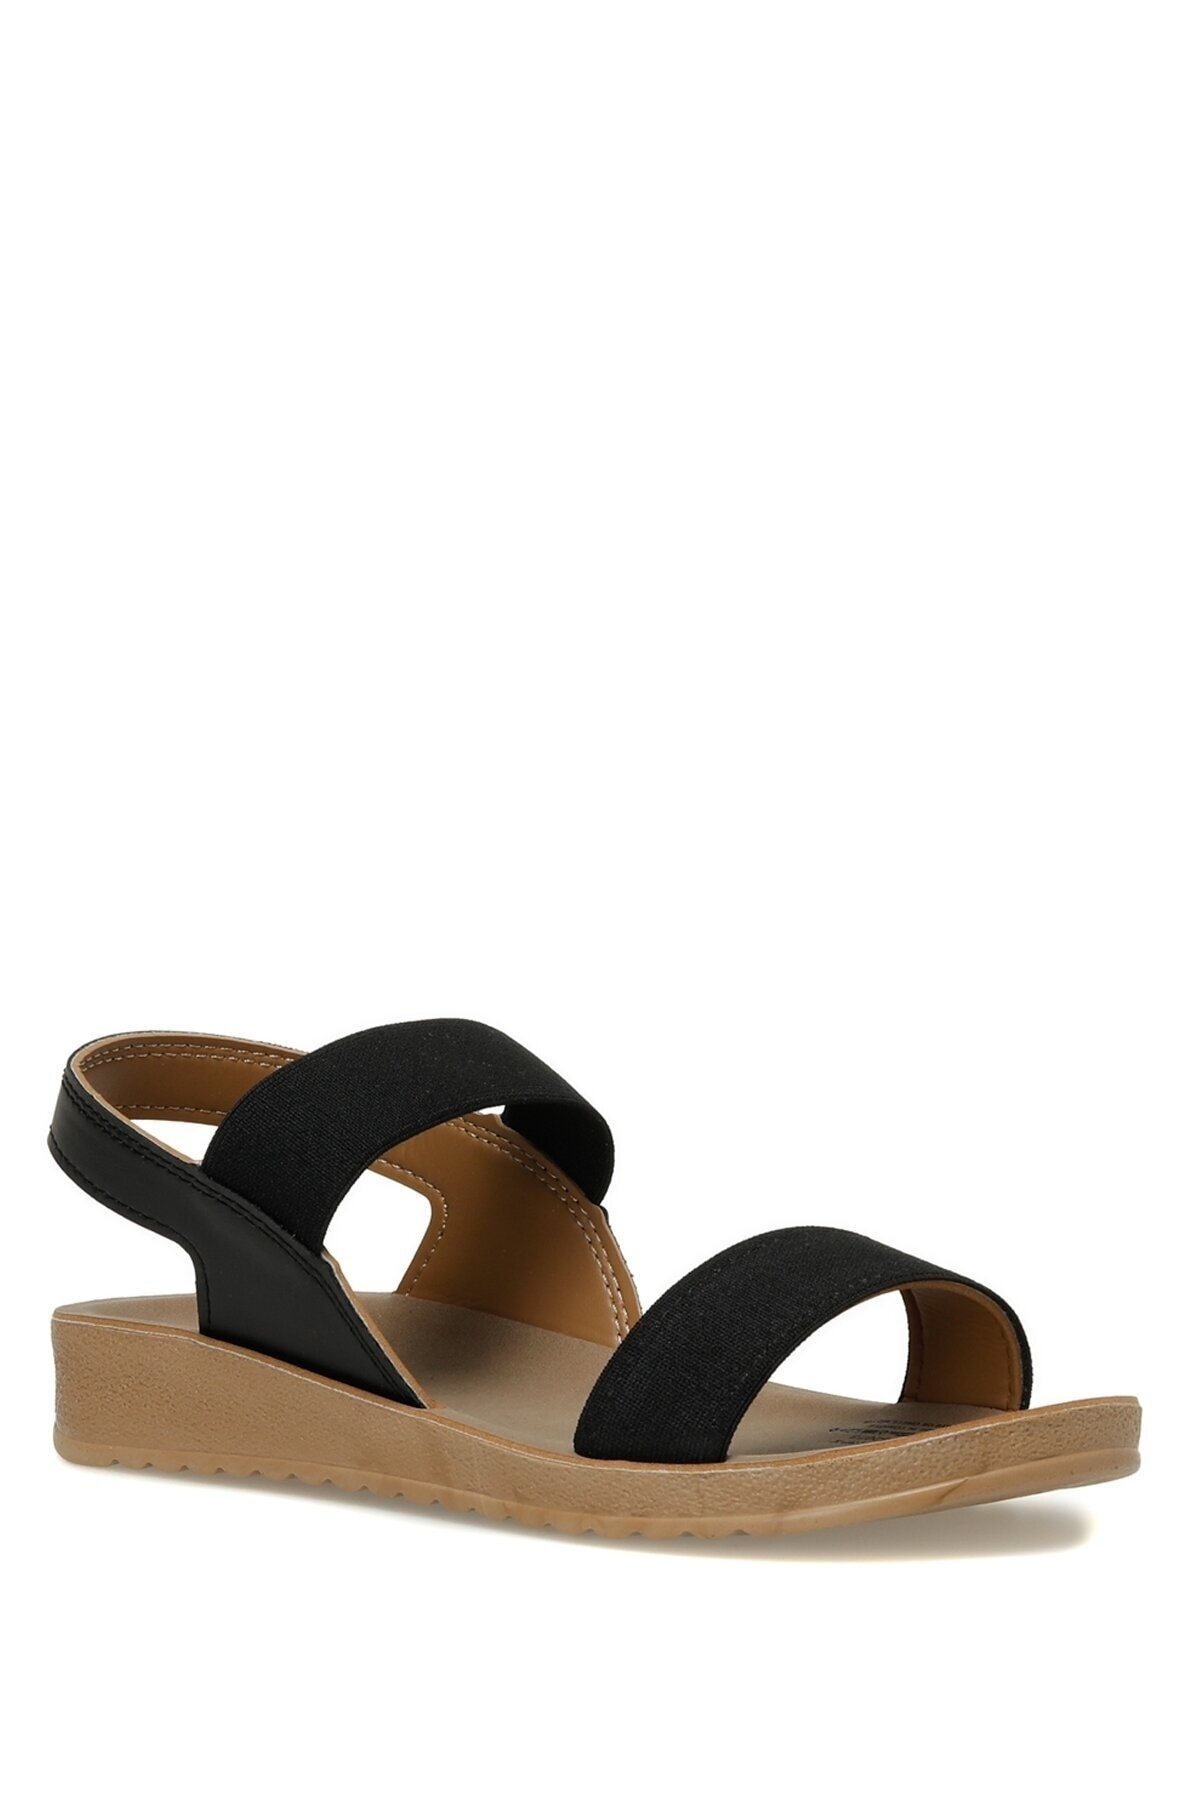 Levně Polaris 161095.z3fx Women's Black Comfort Sandals